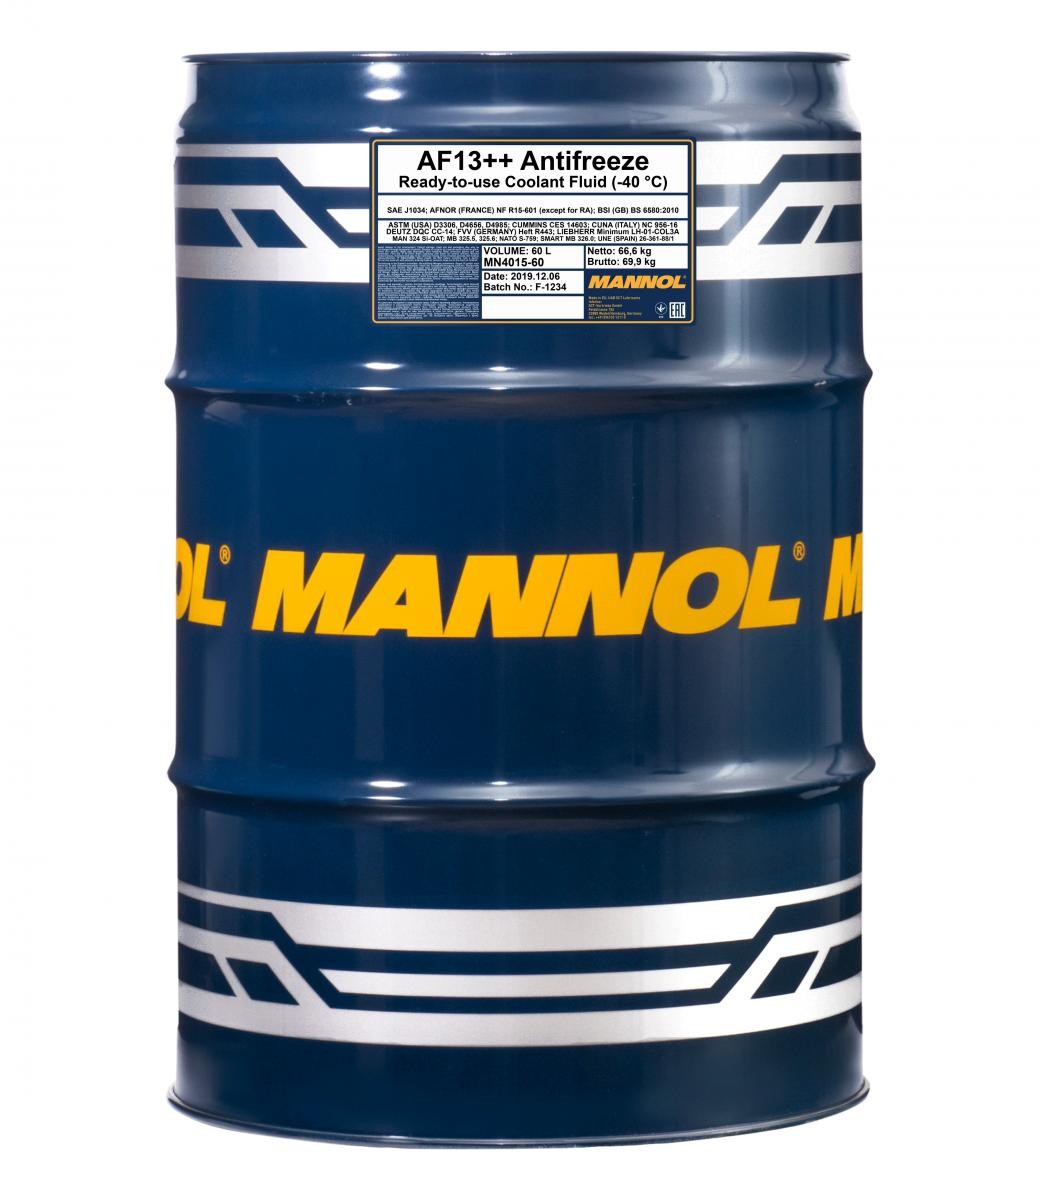 MN4015-60 MANNOL AF13++, High-performance G12 Rot, 60l G12, Temperaturbereich von: +125, -40°C Frostschutz MN4015-60 günstig kaufen